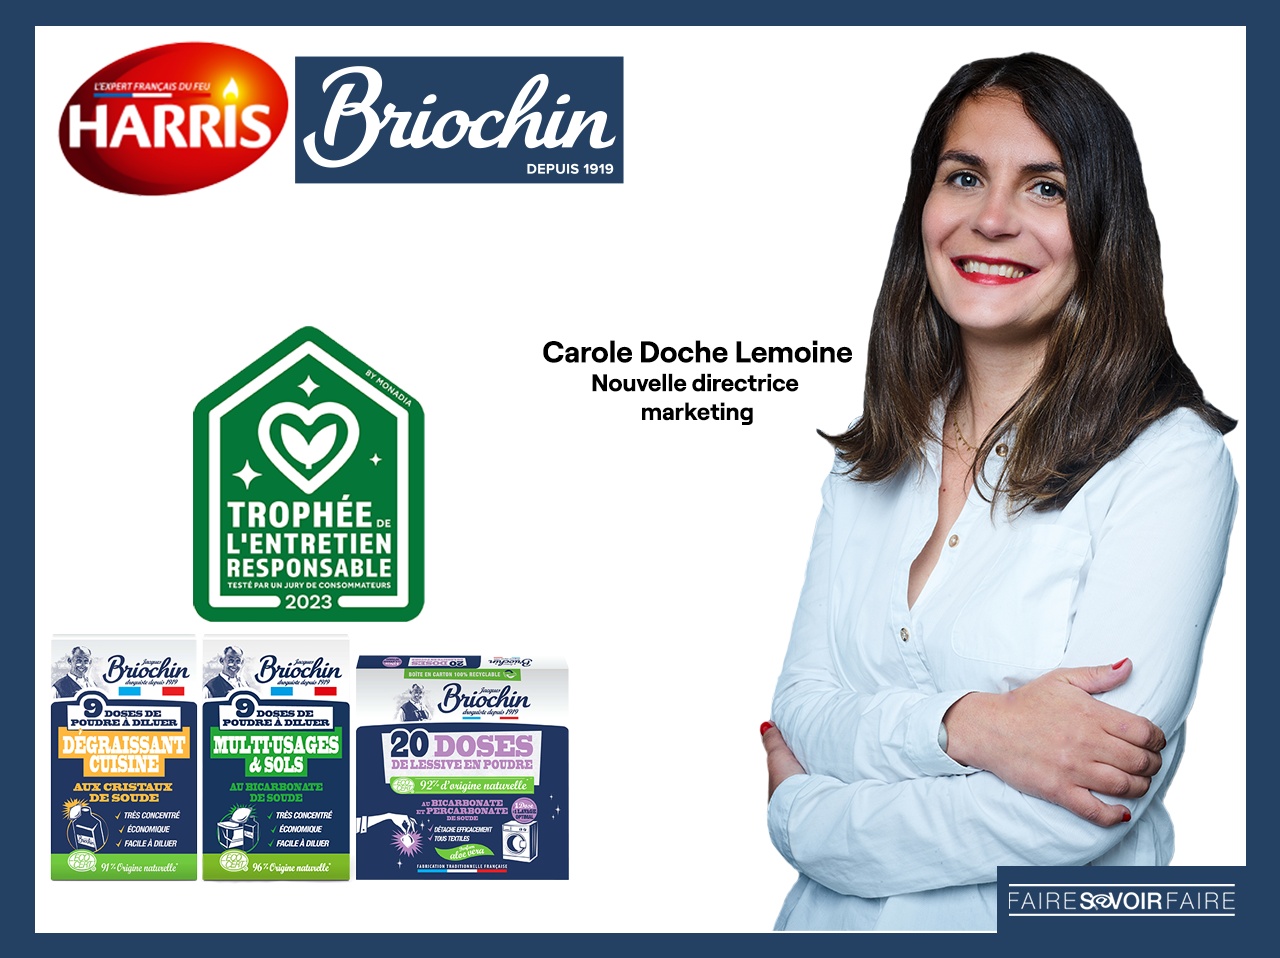 Harris-Briochin: nouvelle directrice marketing et Trophée de l’Entretien Responsable